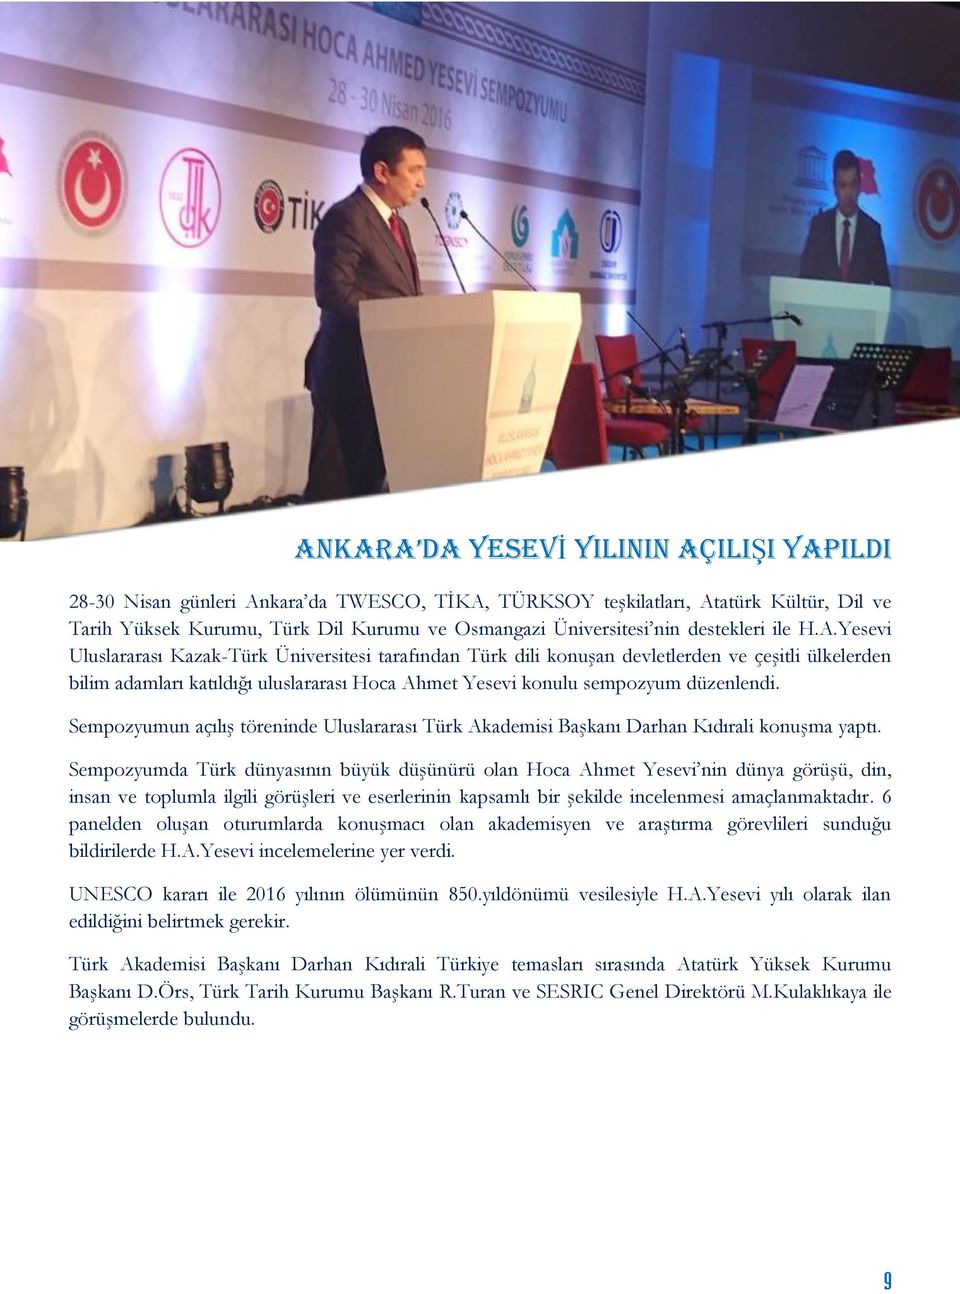 Yesevi Uluslararası Kazak-Türk Üniversitesi tarafından Türk dili konuşan devletlerden ve çeşitli ülkelerden bilim adamları katıldığı uluslararası Hoca Ahmet Yesevi konulu sempozyum düzenlendi.